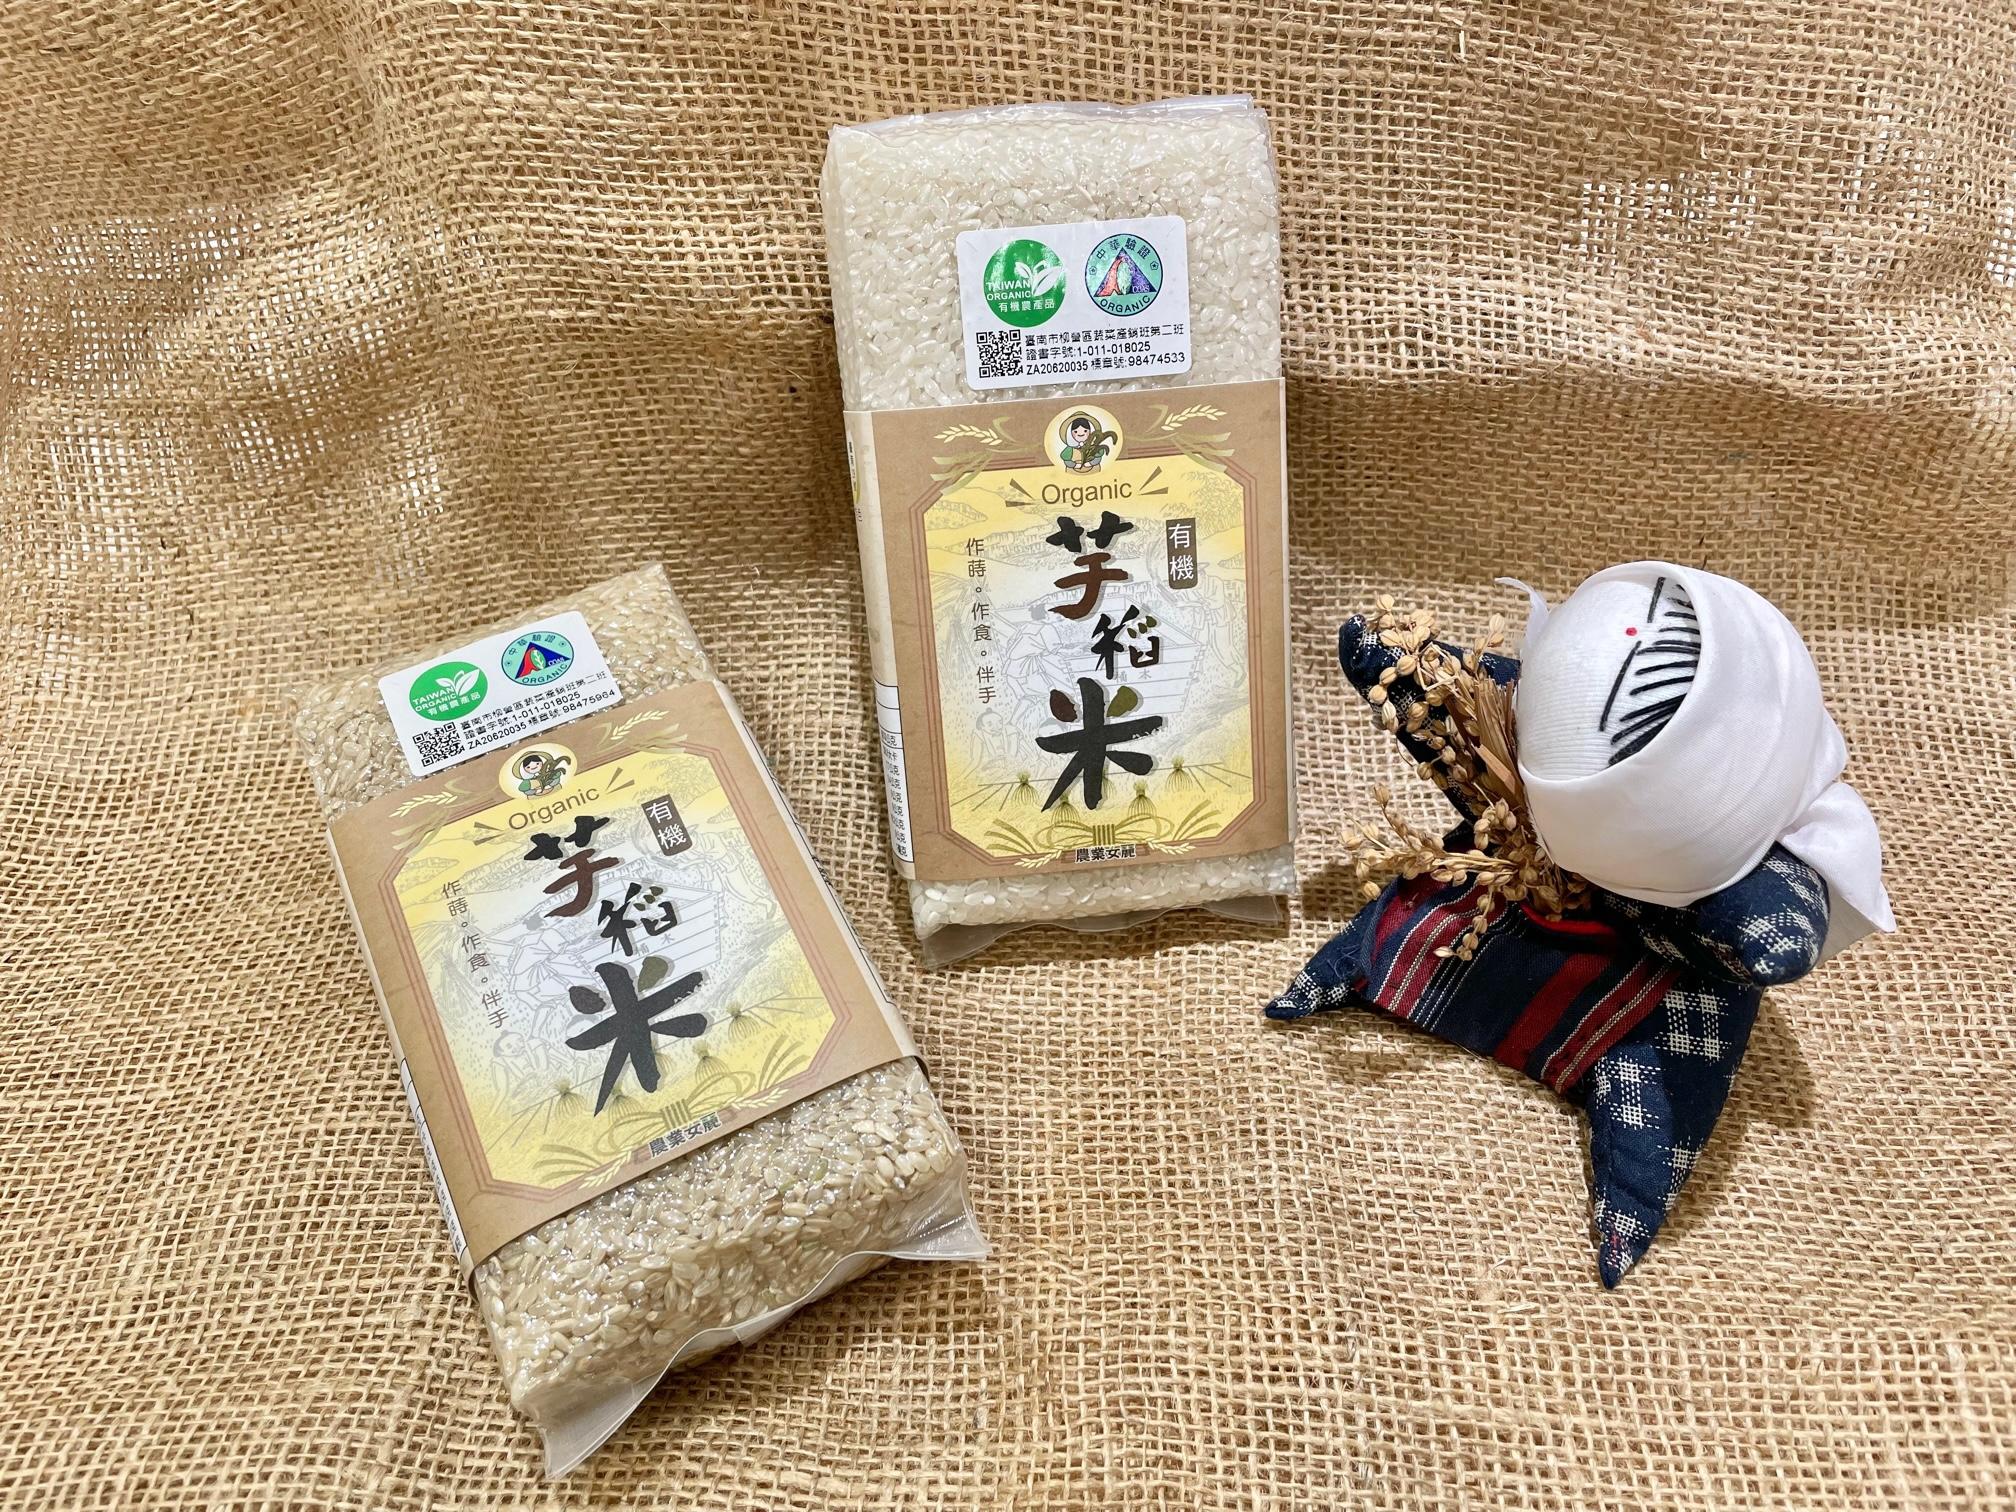 有機芋稻米-糙米(600g裝) 